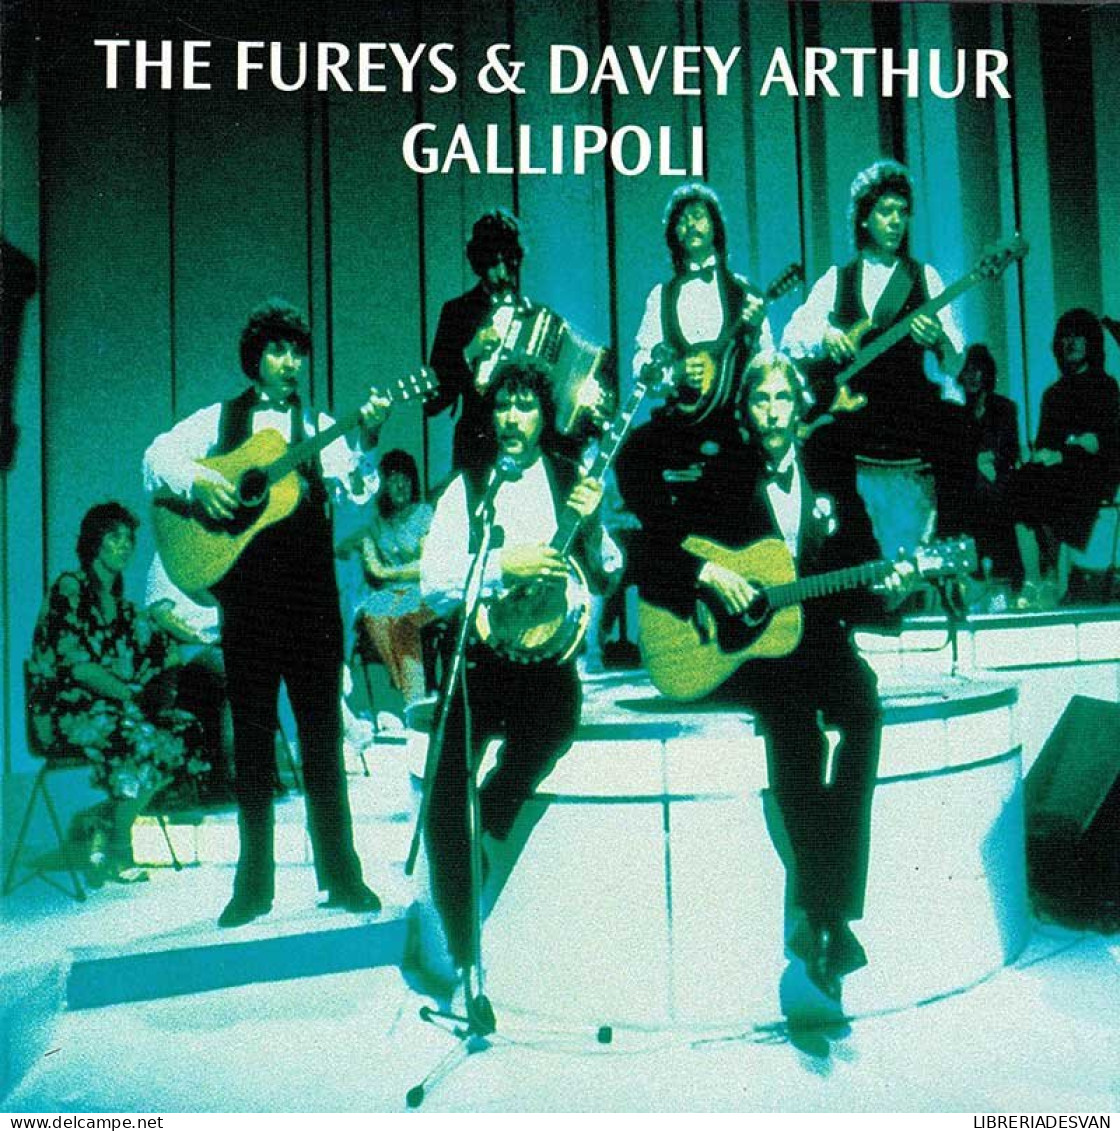 The Fureys & Davey Arthur - Gallipoli. CD - Country & Folk